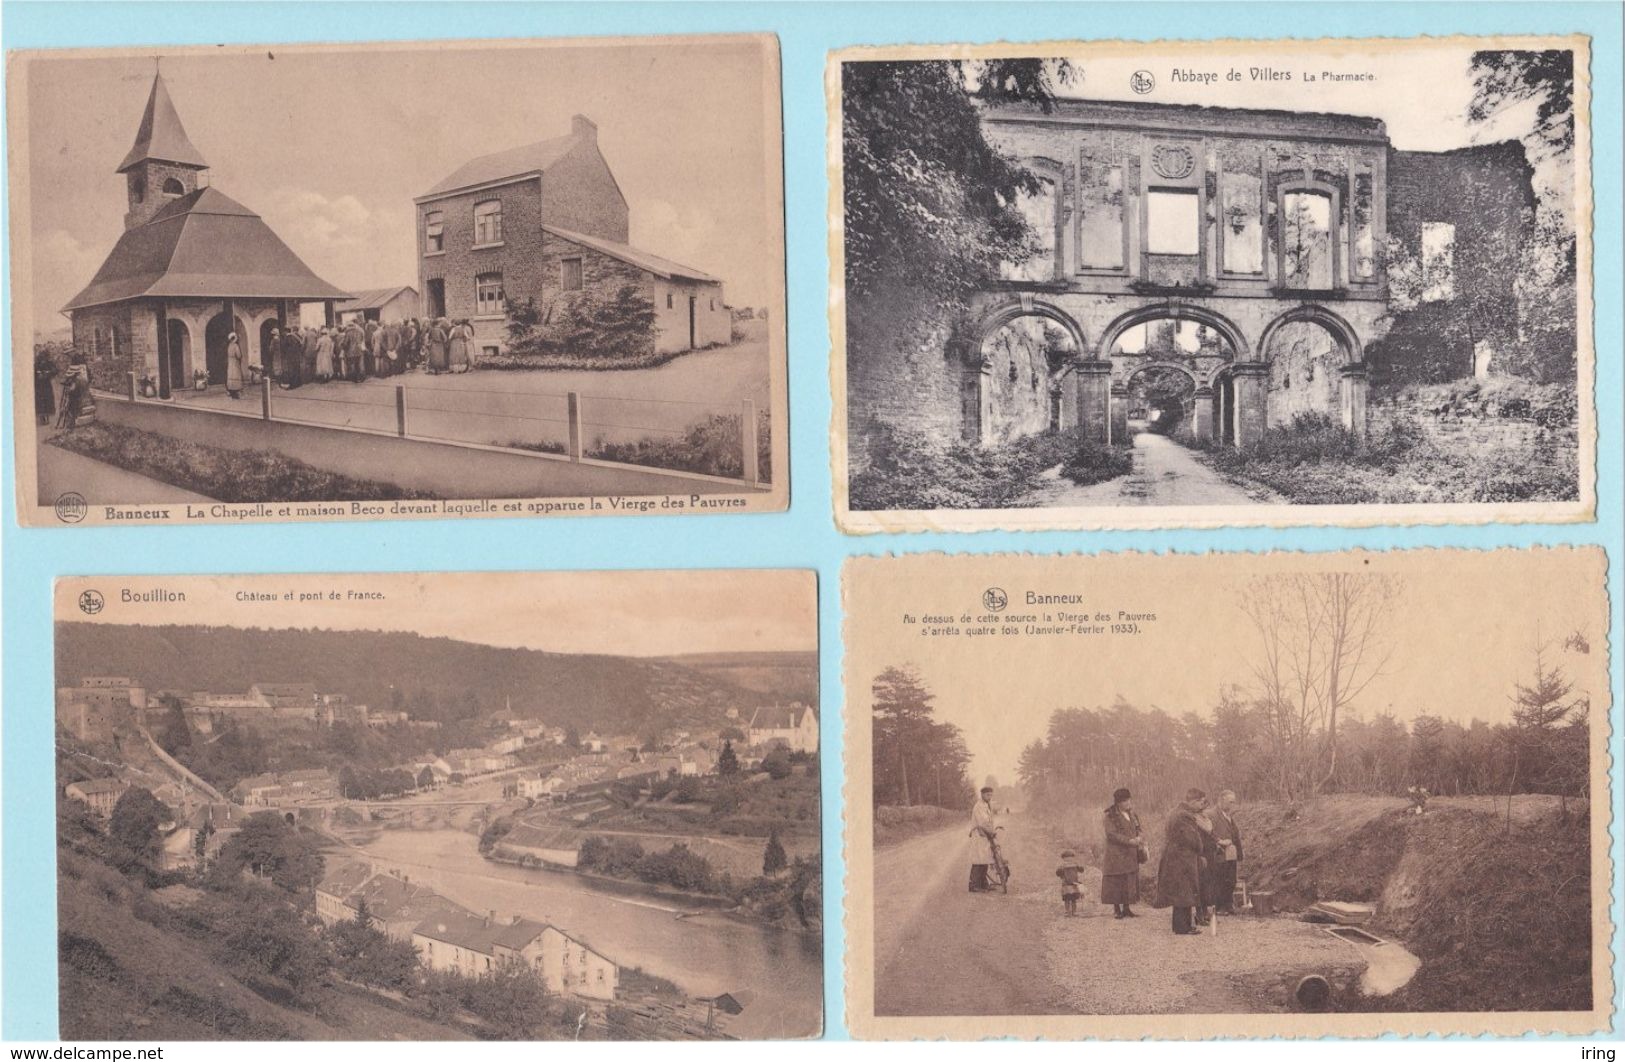 Beau lot de 60 cartes postales de Belgique Wallonie  Mooi lot van 60 postkaarten van Belgie Wallonie - 15 scans